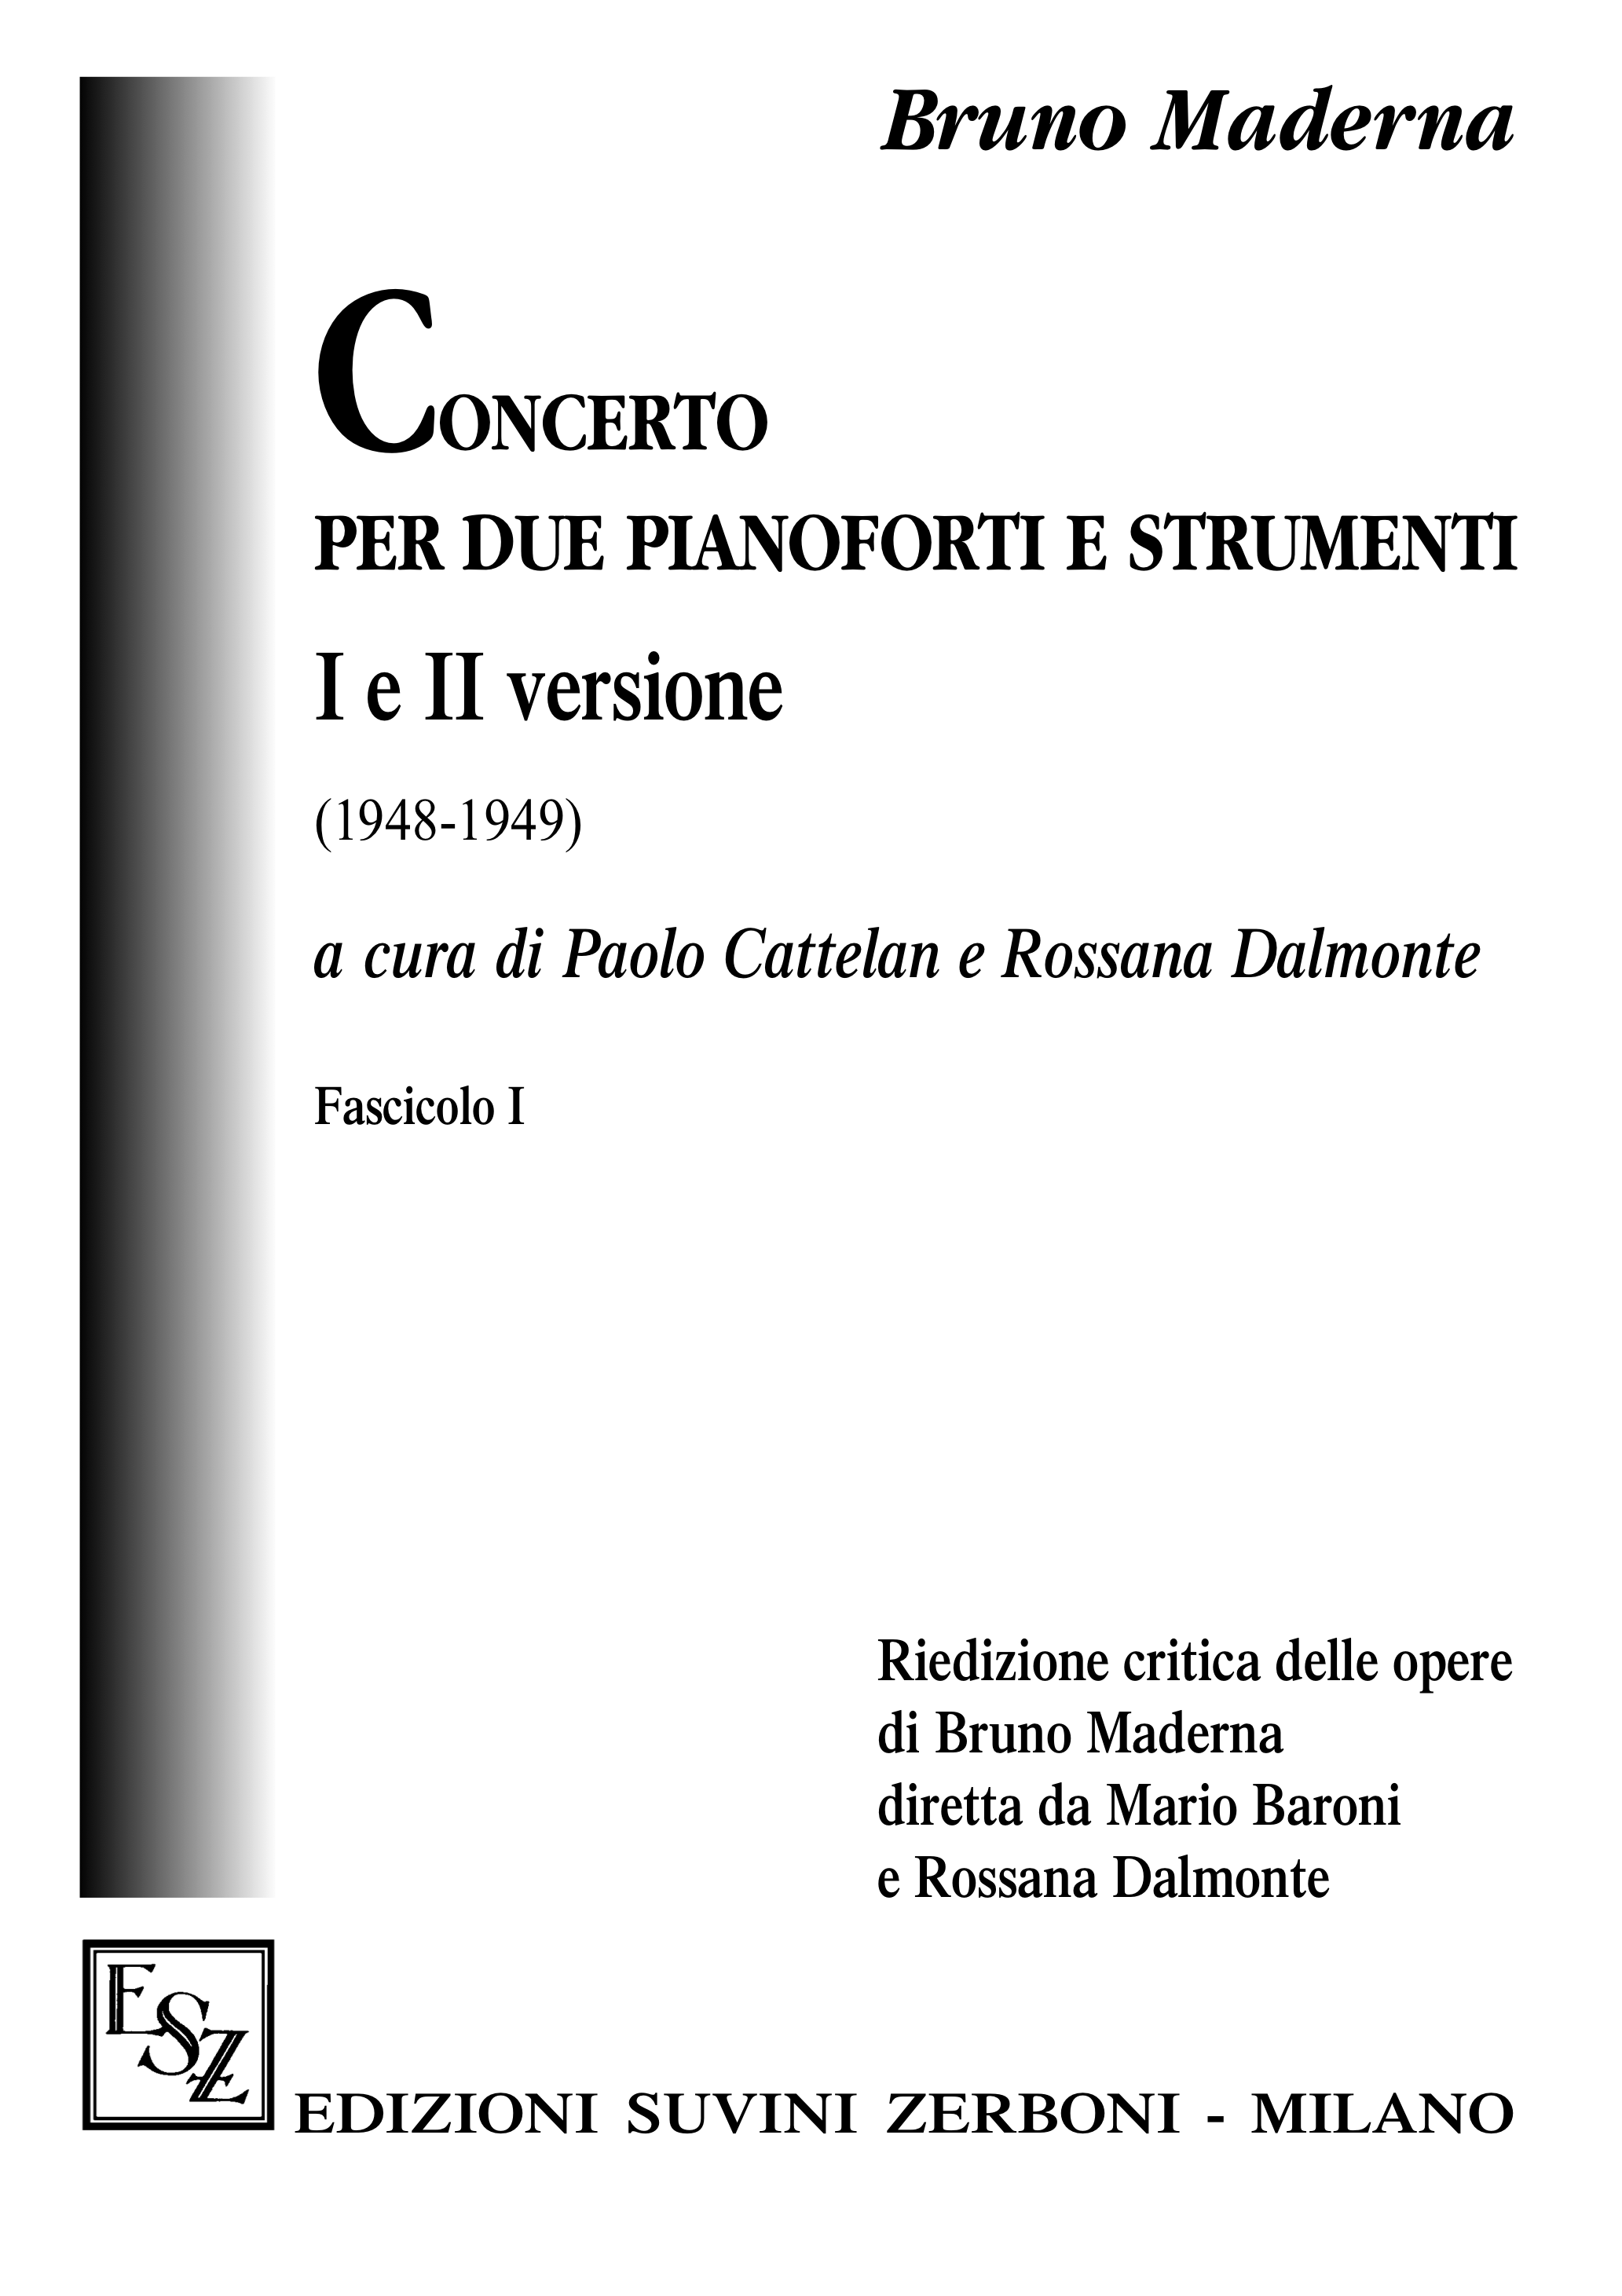 Concerto per 2 pianoforti_Maderna 1